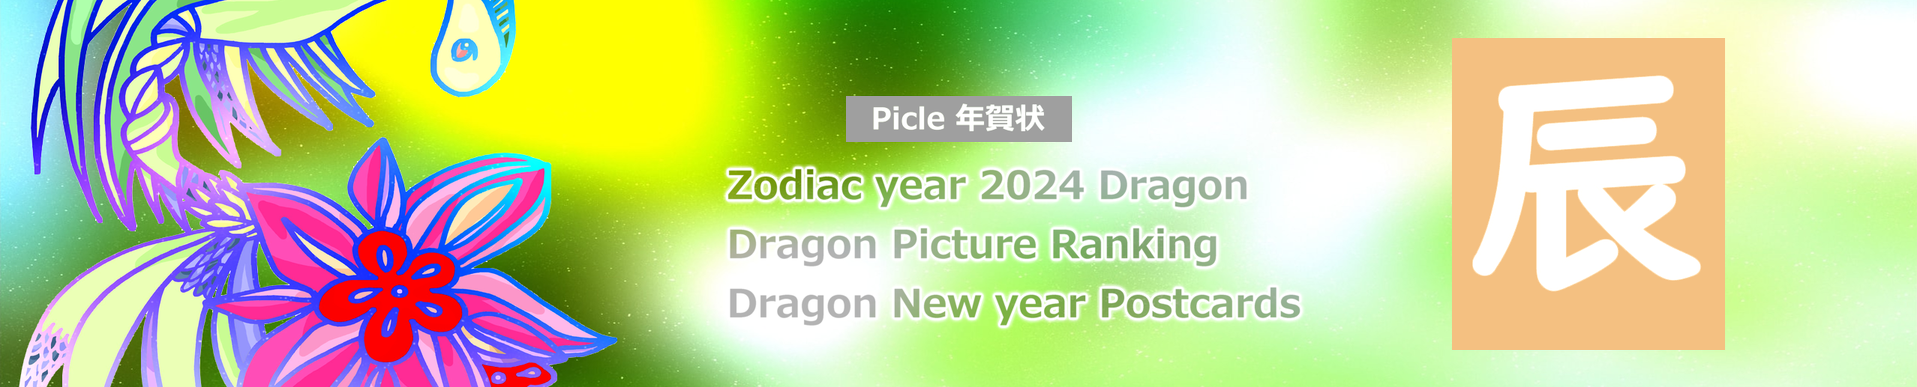 Picle年賀状 2024 조디악 드래곤 아트 무료 그림 자료 원본 템플릿 카드 이미지 인쇄 다운로드